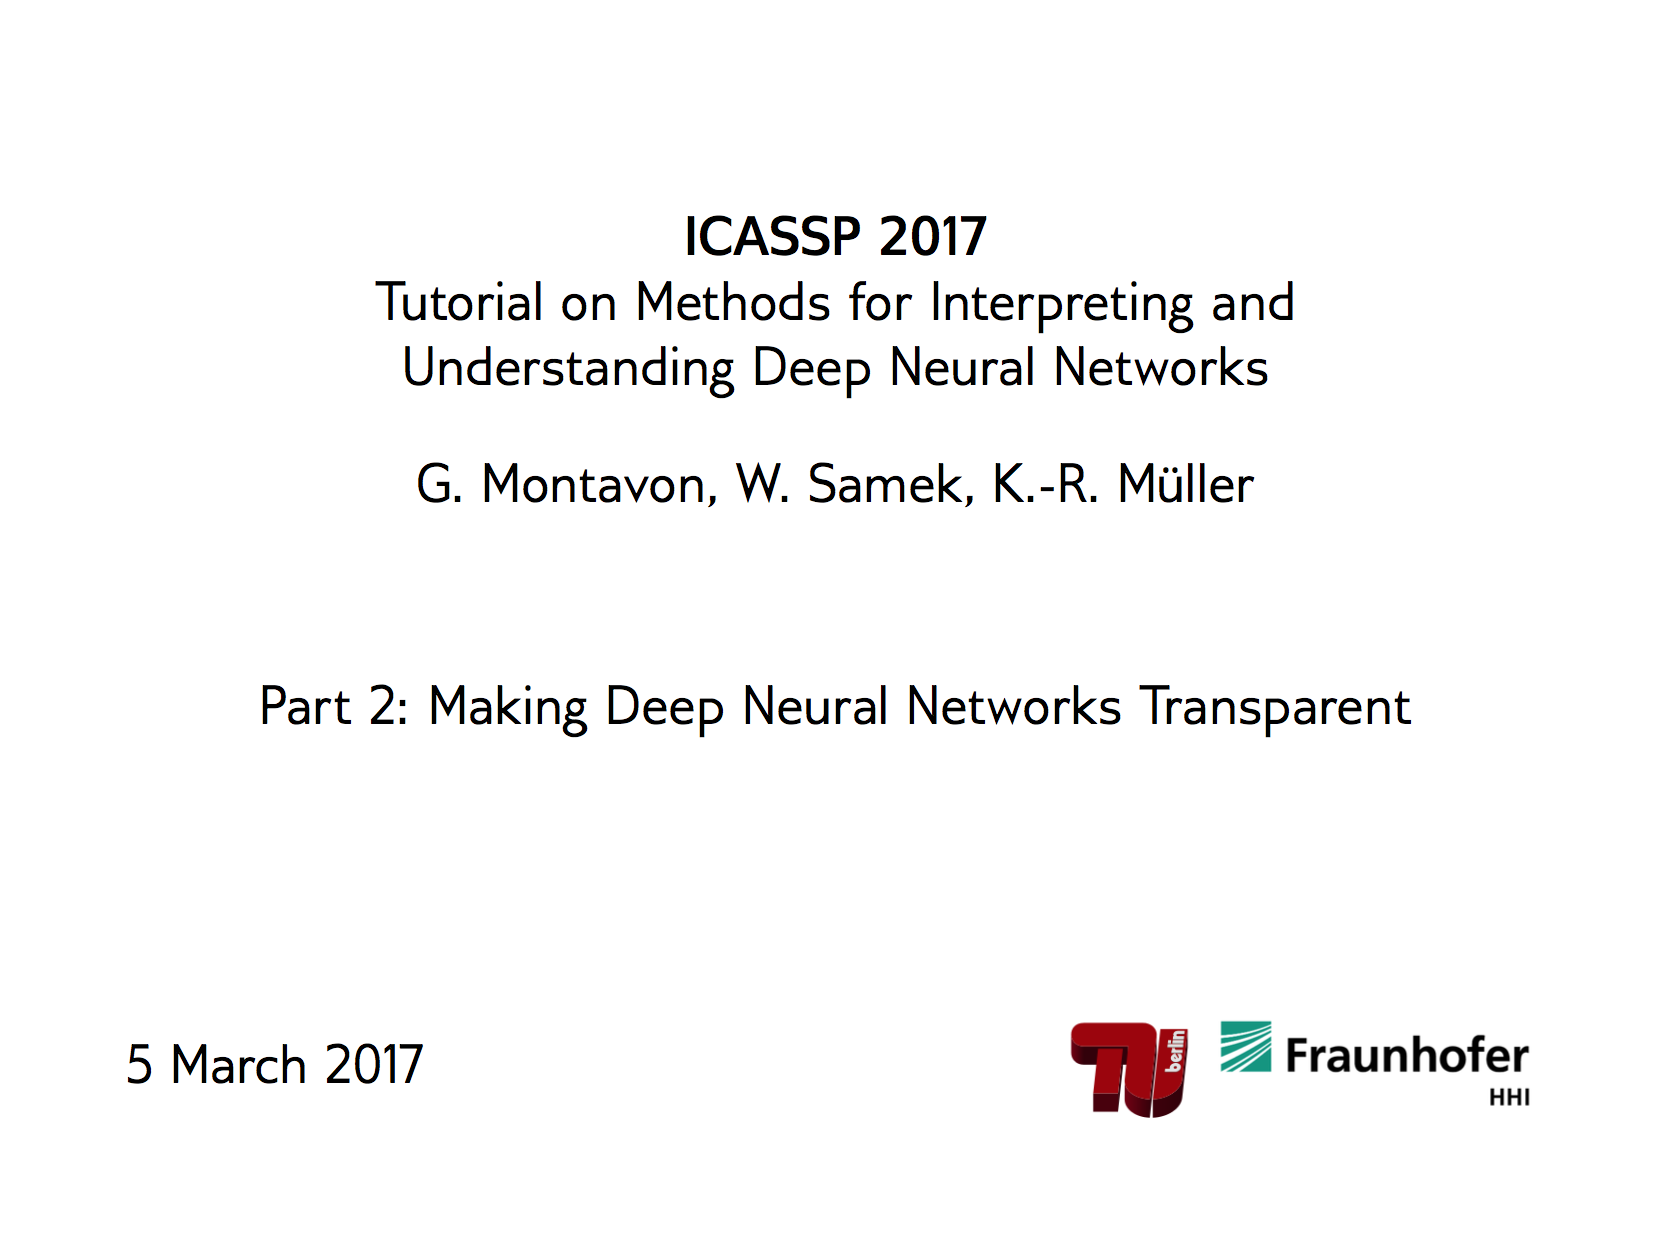 ICASSP Tutorial 2